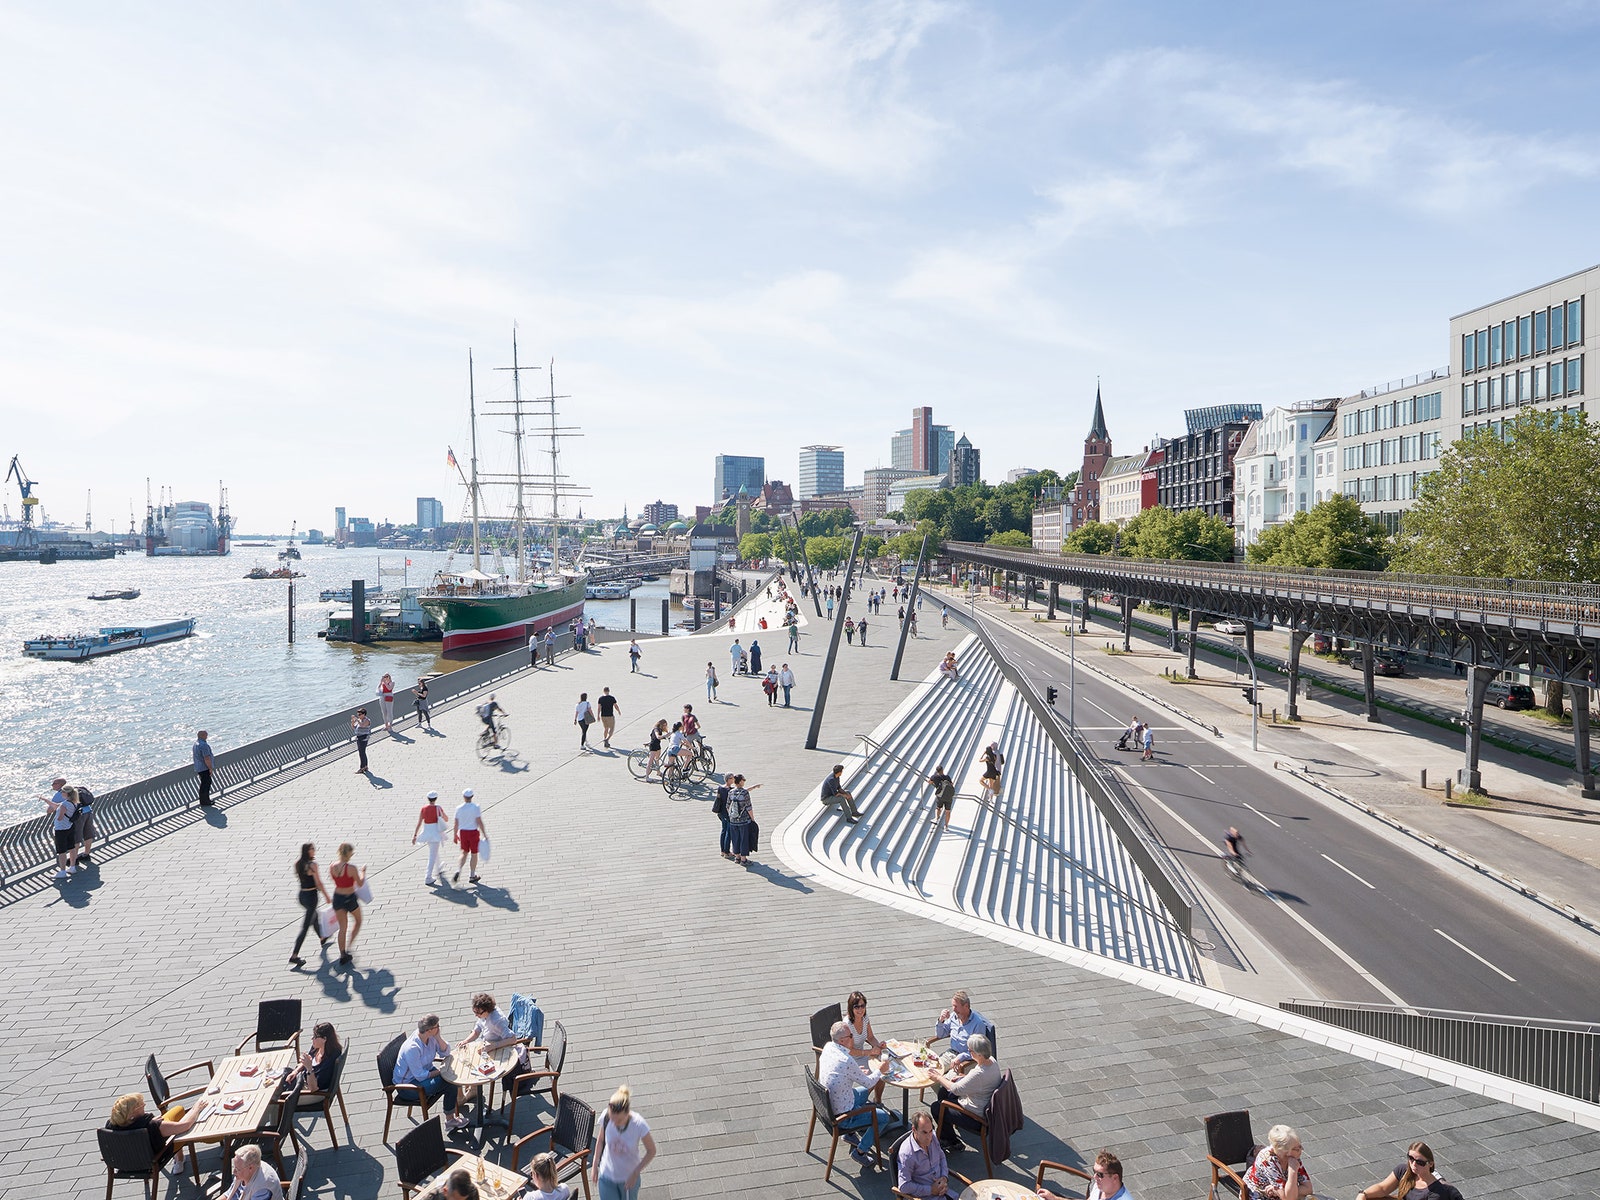 Защита от наводнений набережная по проекту Zaha Hadid Architects в Гамбурге